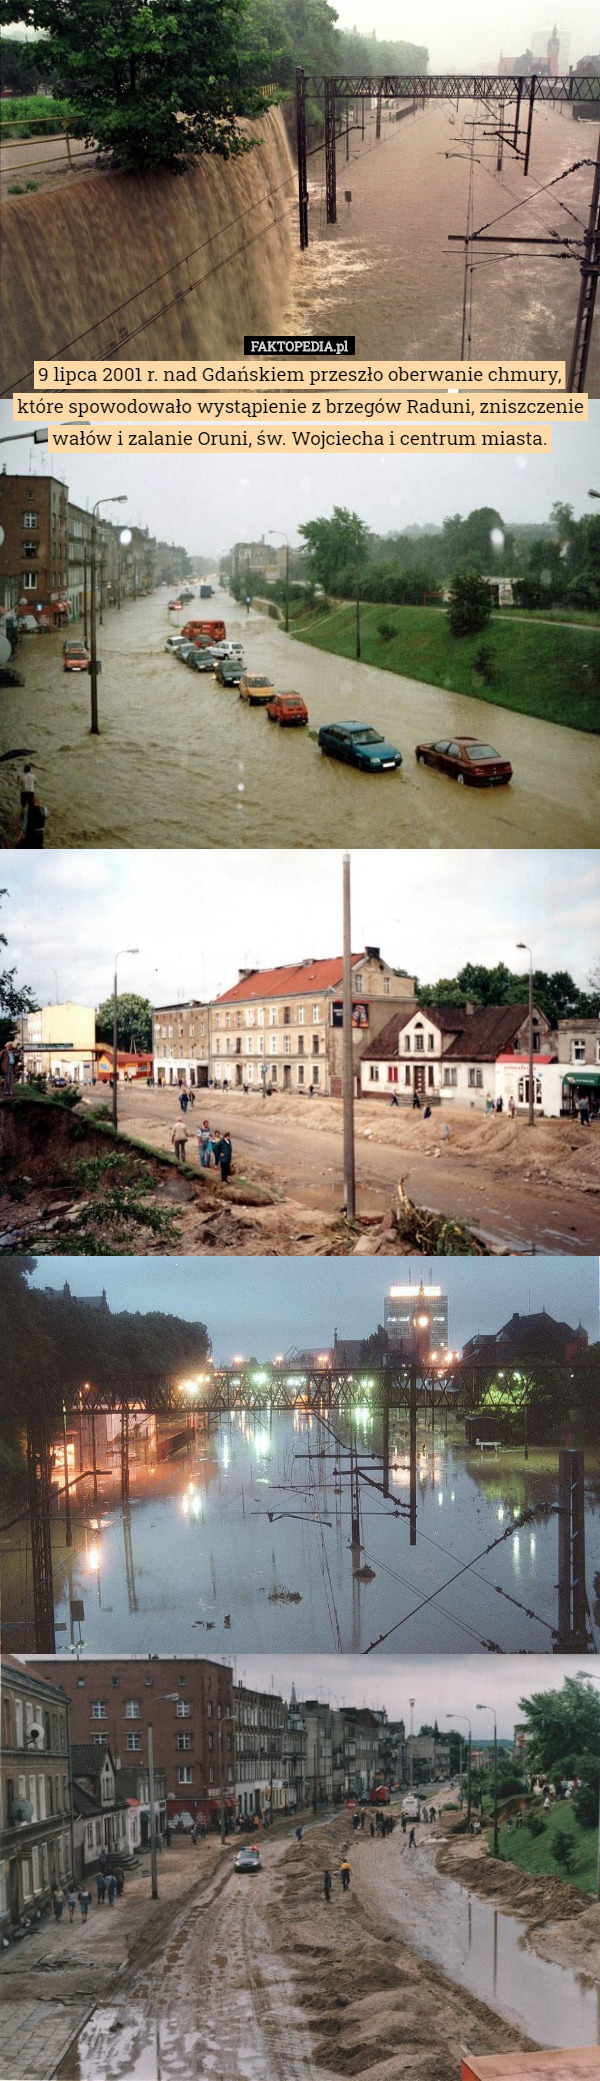 9 lipca 2001 r. nad Gdańskiem przeszło oberwanie chmury, które spowodowało wystąpienie z brzegów Raduni, zniszczenie wałów i zalanie Oruni, św. Wojciecha i centrum miasta. 